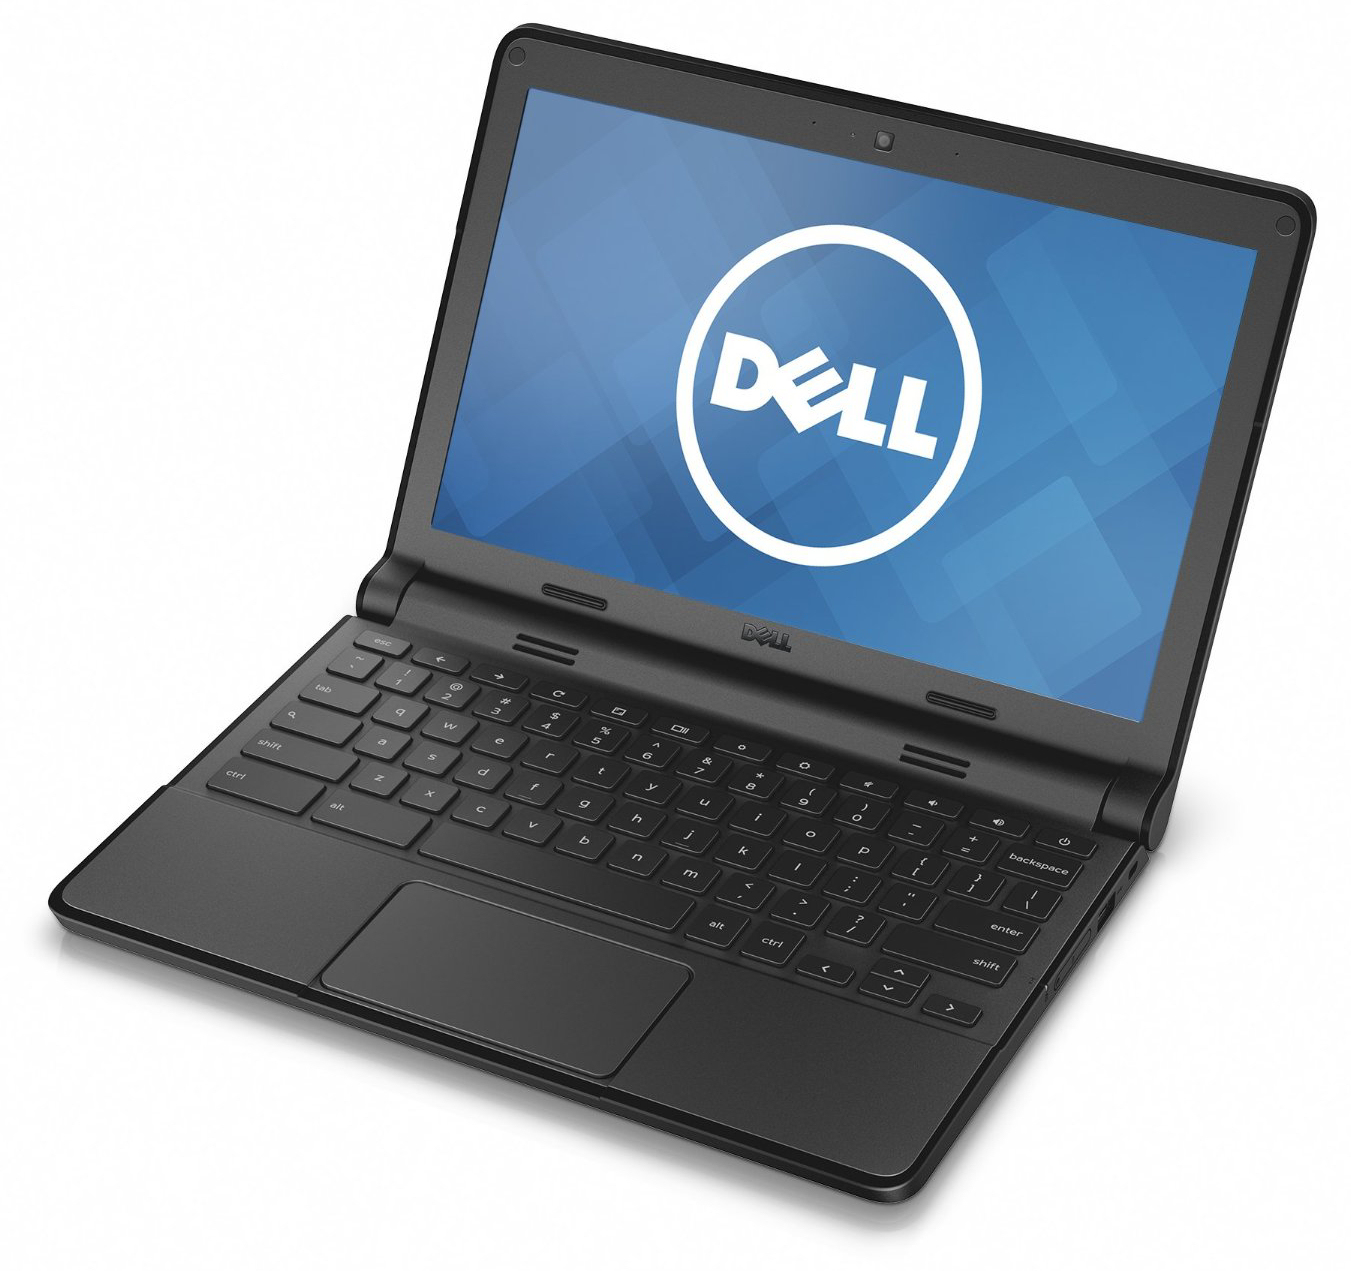 Laptop Dell Chromebook 3120, Intel Celeron N2840 2.16GHz, 2GB DDR3, 16GB SSD, 11.6 Inch, Webcam, Chrome OS